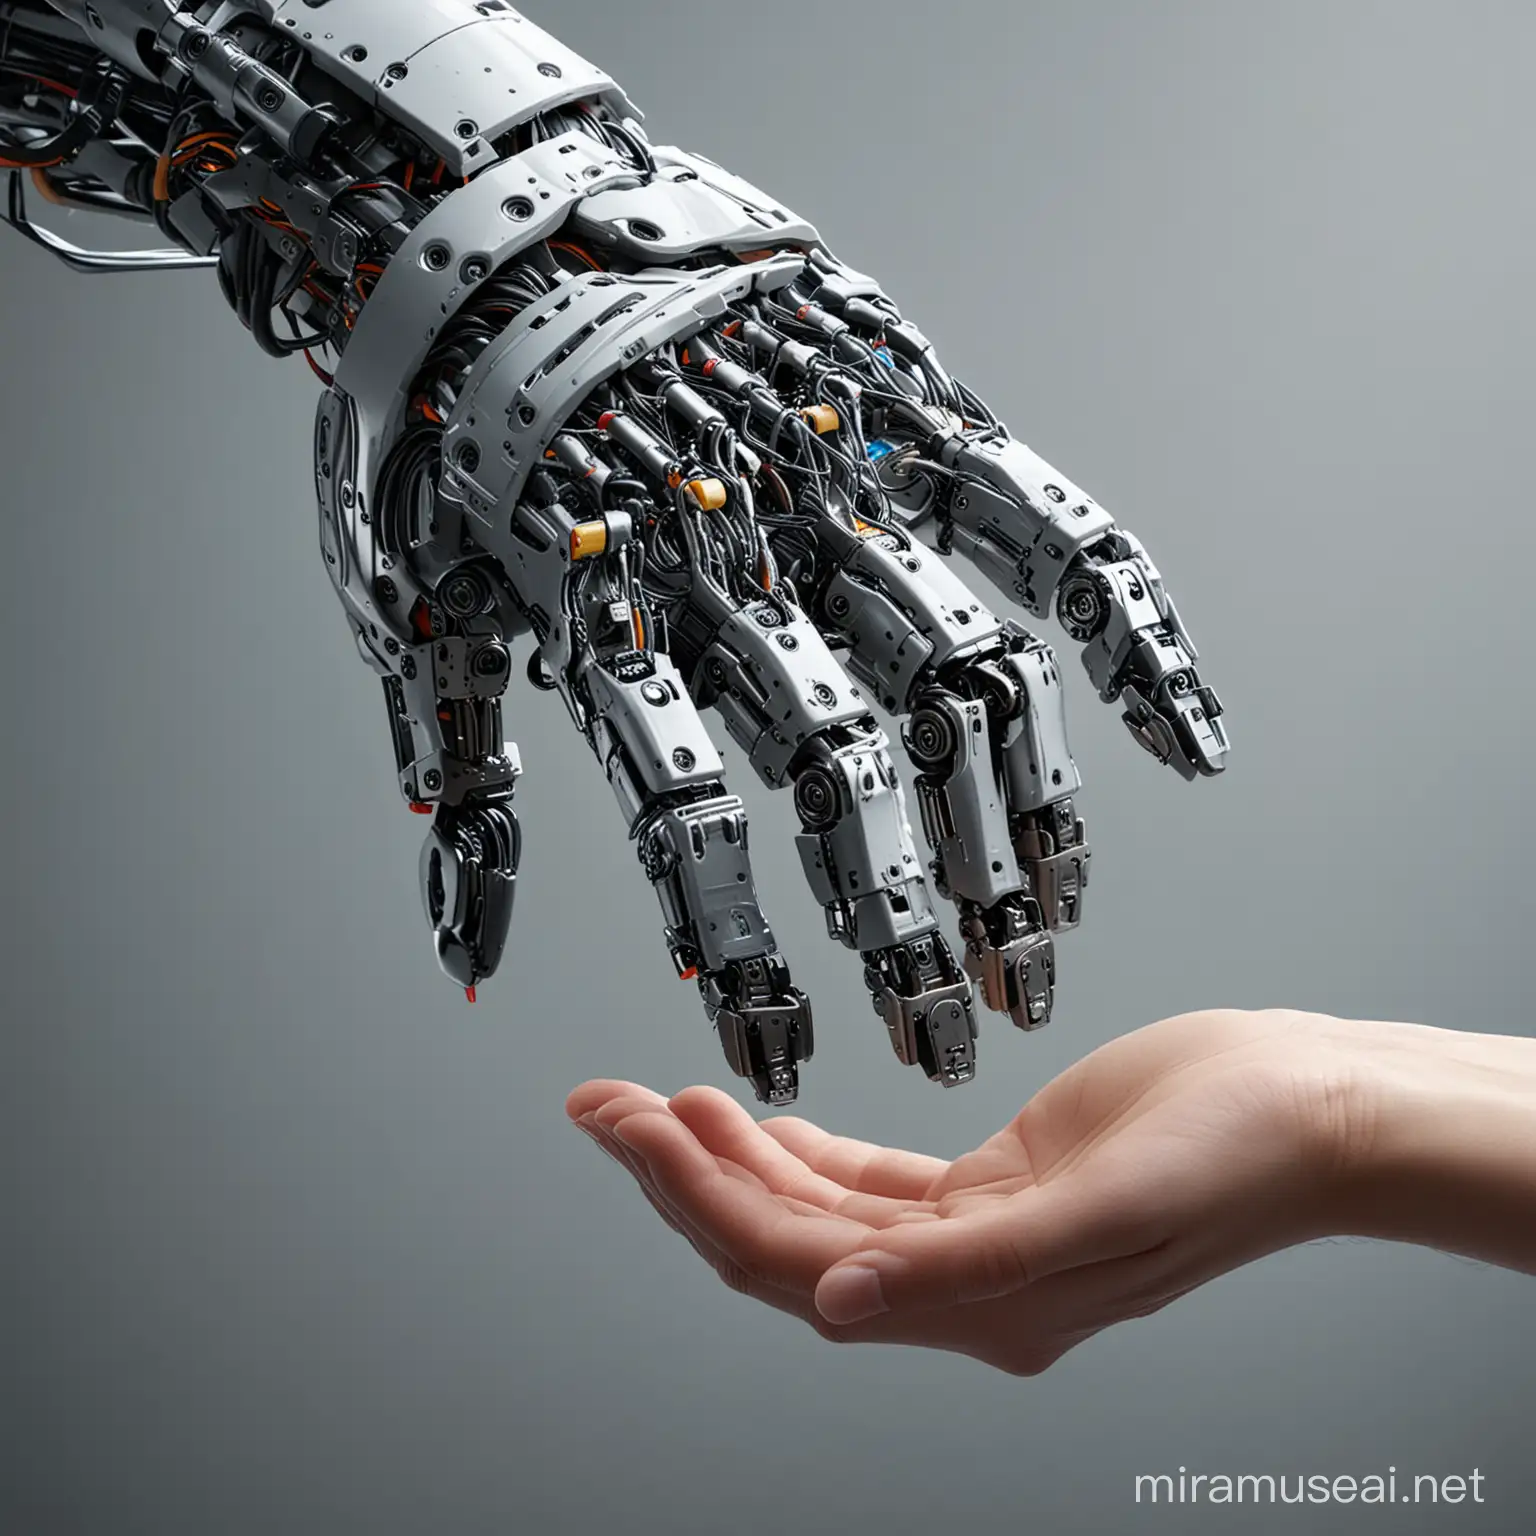 HumanRobot Interaction Touching Hands in Closeup Shot